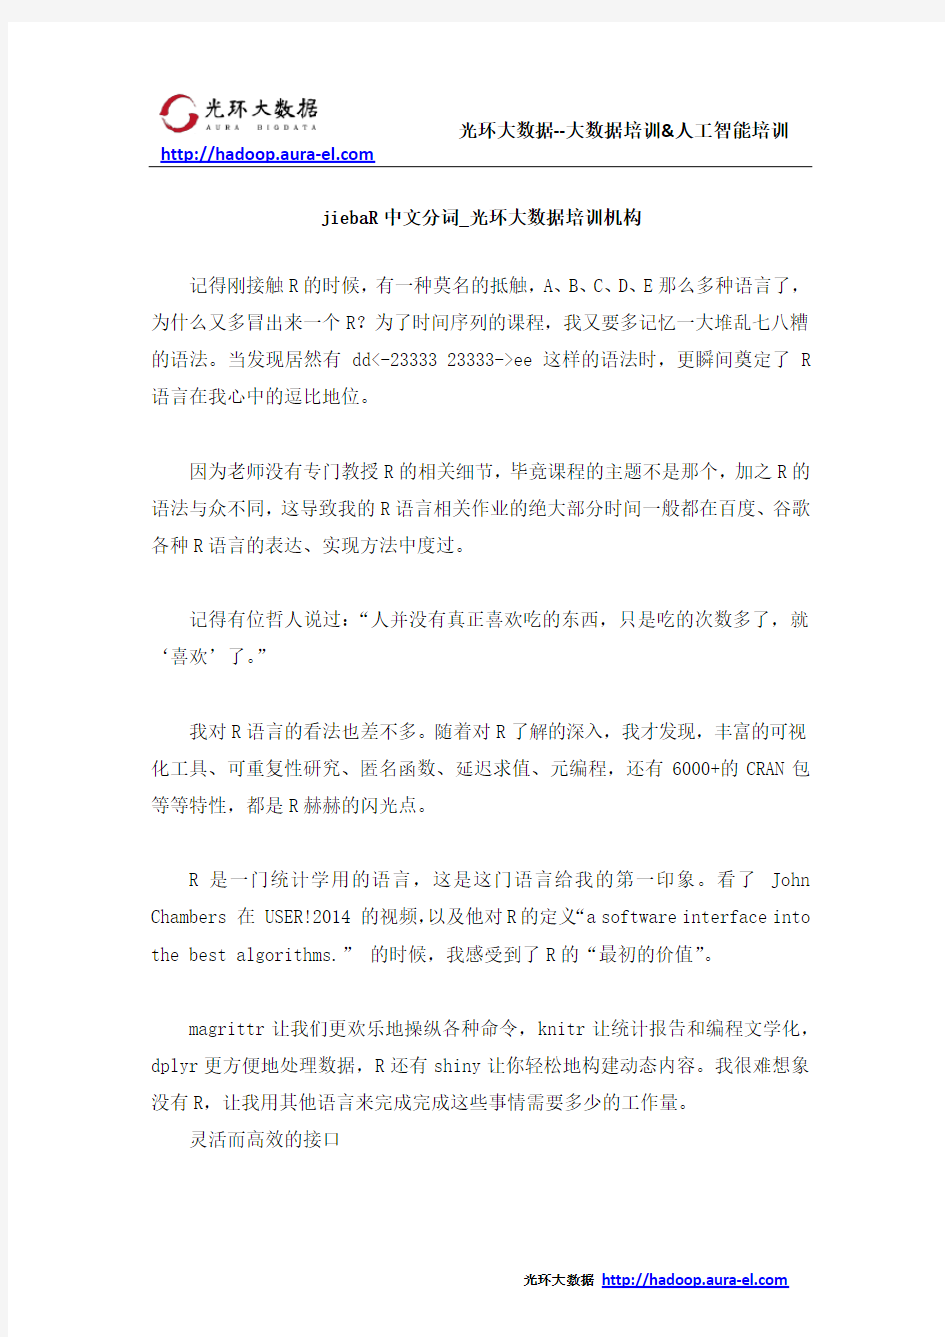 jiebaR中文分词_光环大数据培训机构